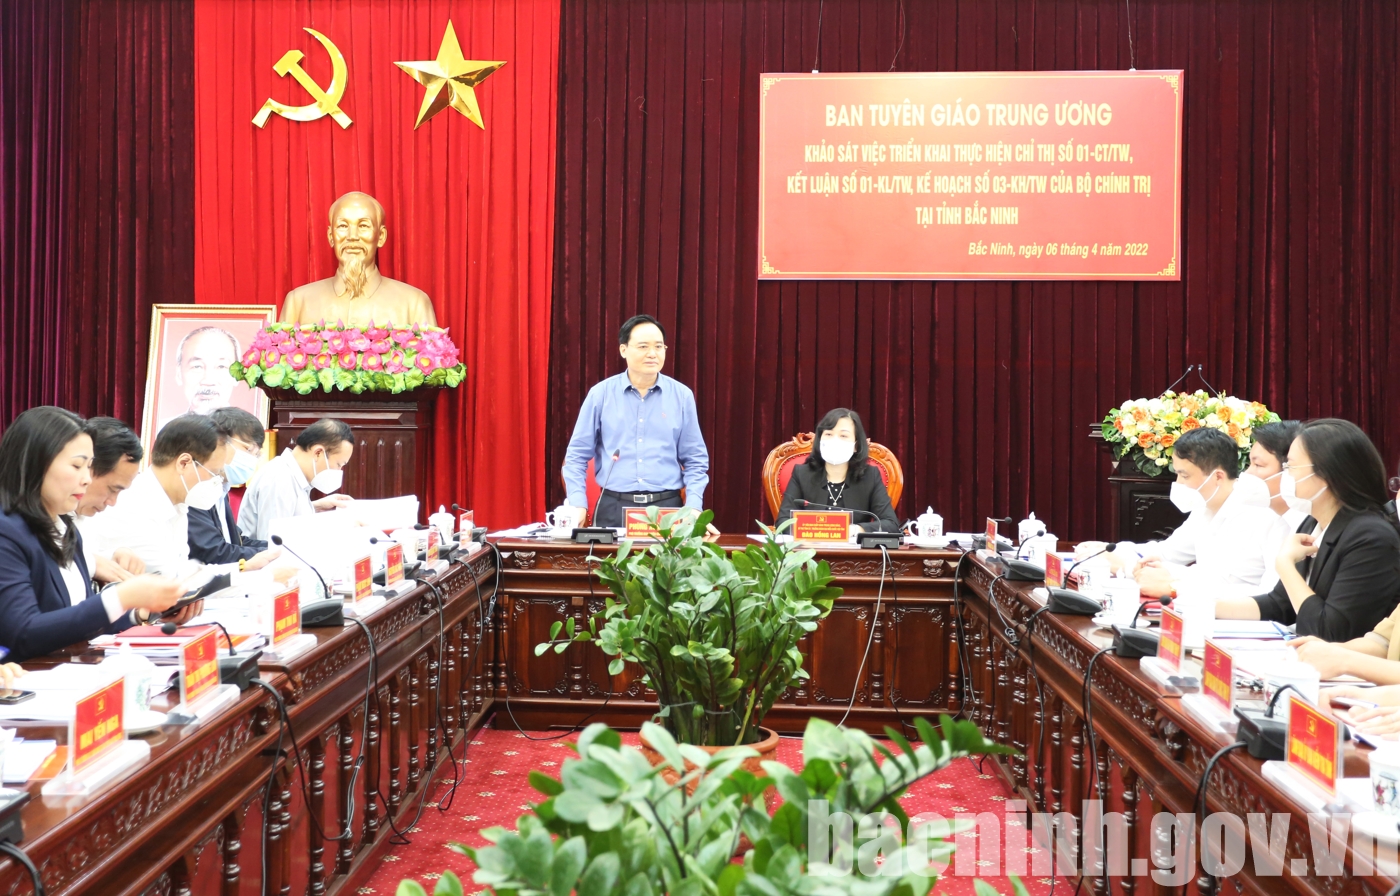 Đoàn công tác của Ban Tuyên giáo Trung ương làm việc với tỉnh Bắc Ninh